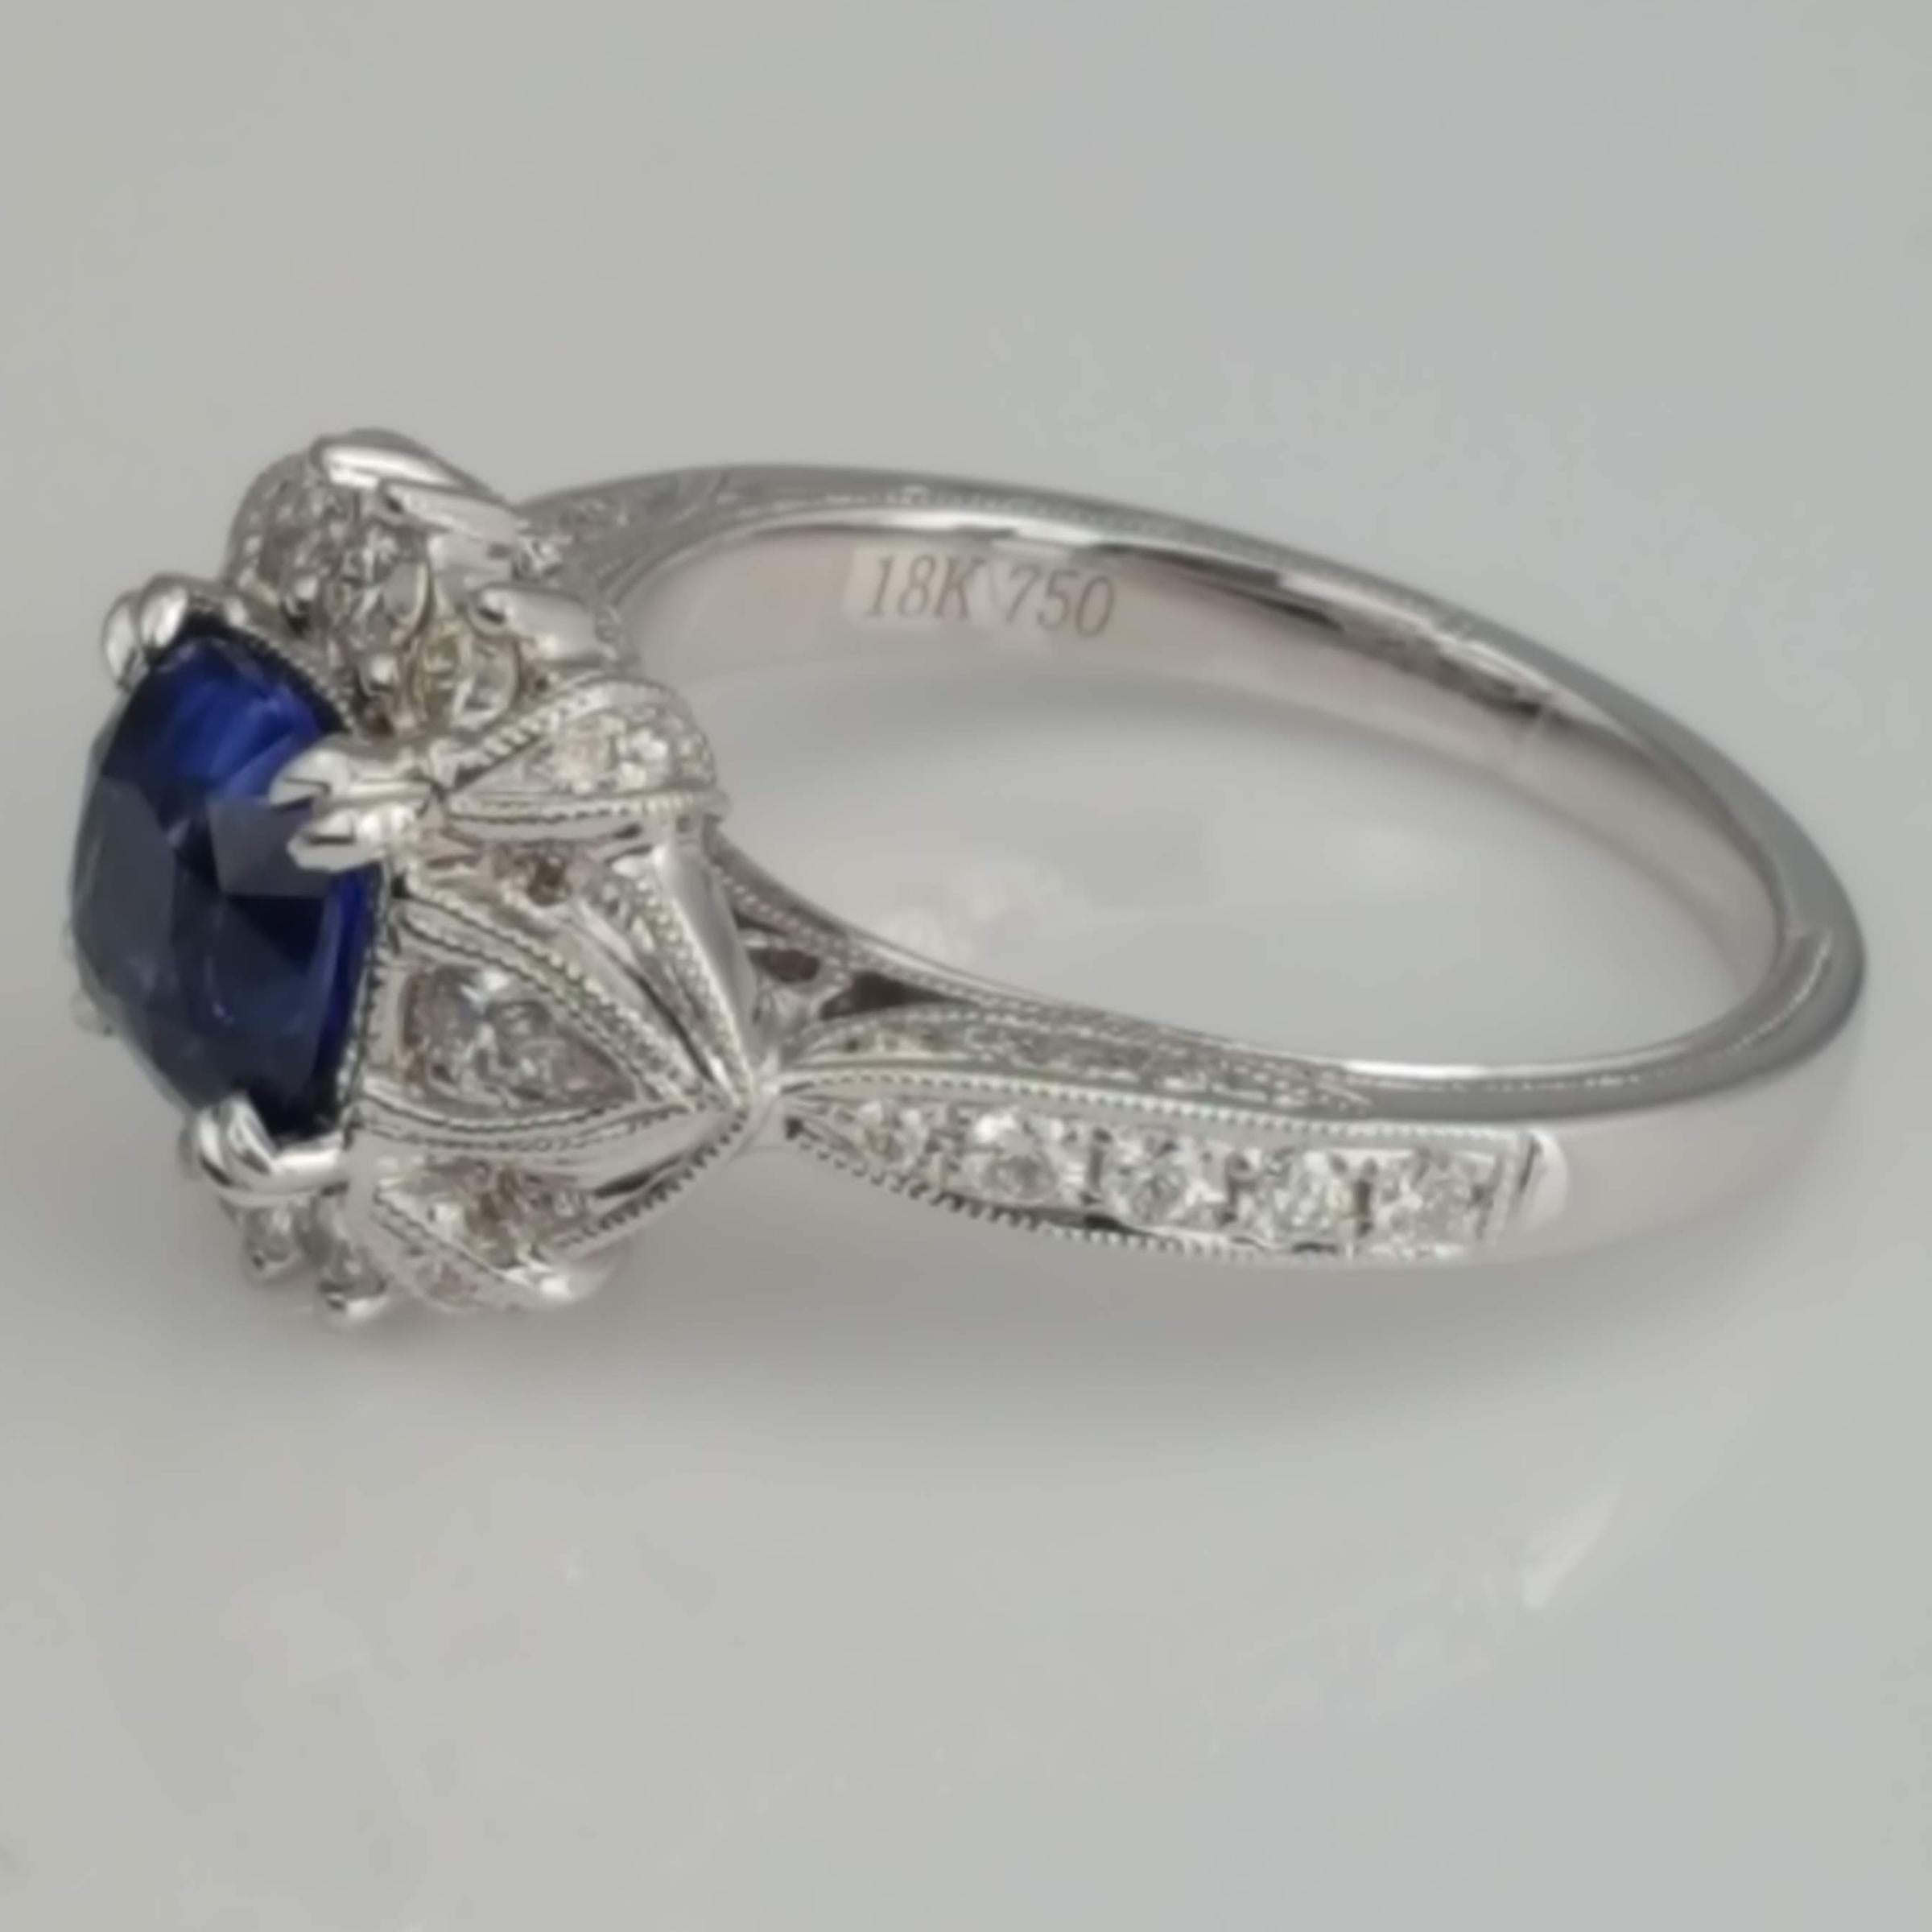 Dieser wunderschöne Ring enthält einen blauen Saphir mit 1,60 Karat im Kissenschliff, der von 0,63 Karat birnenförmigen und runden Diamanten umgeben ist. Die handgravierte Maserung und die Designelemente der alten Welt verleihen diesem Schmuckstück